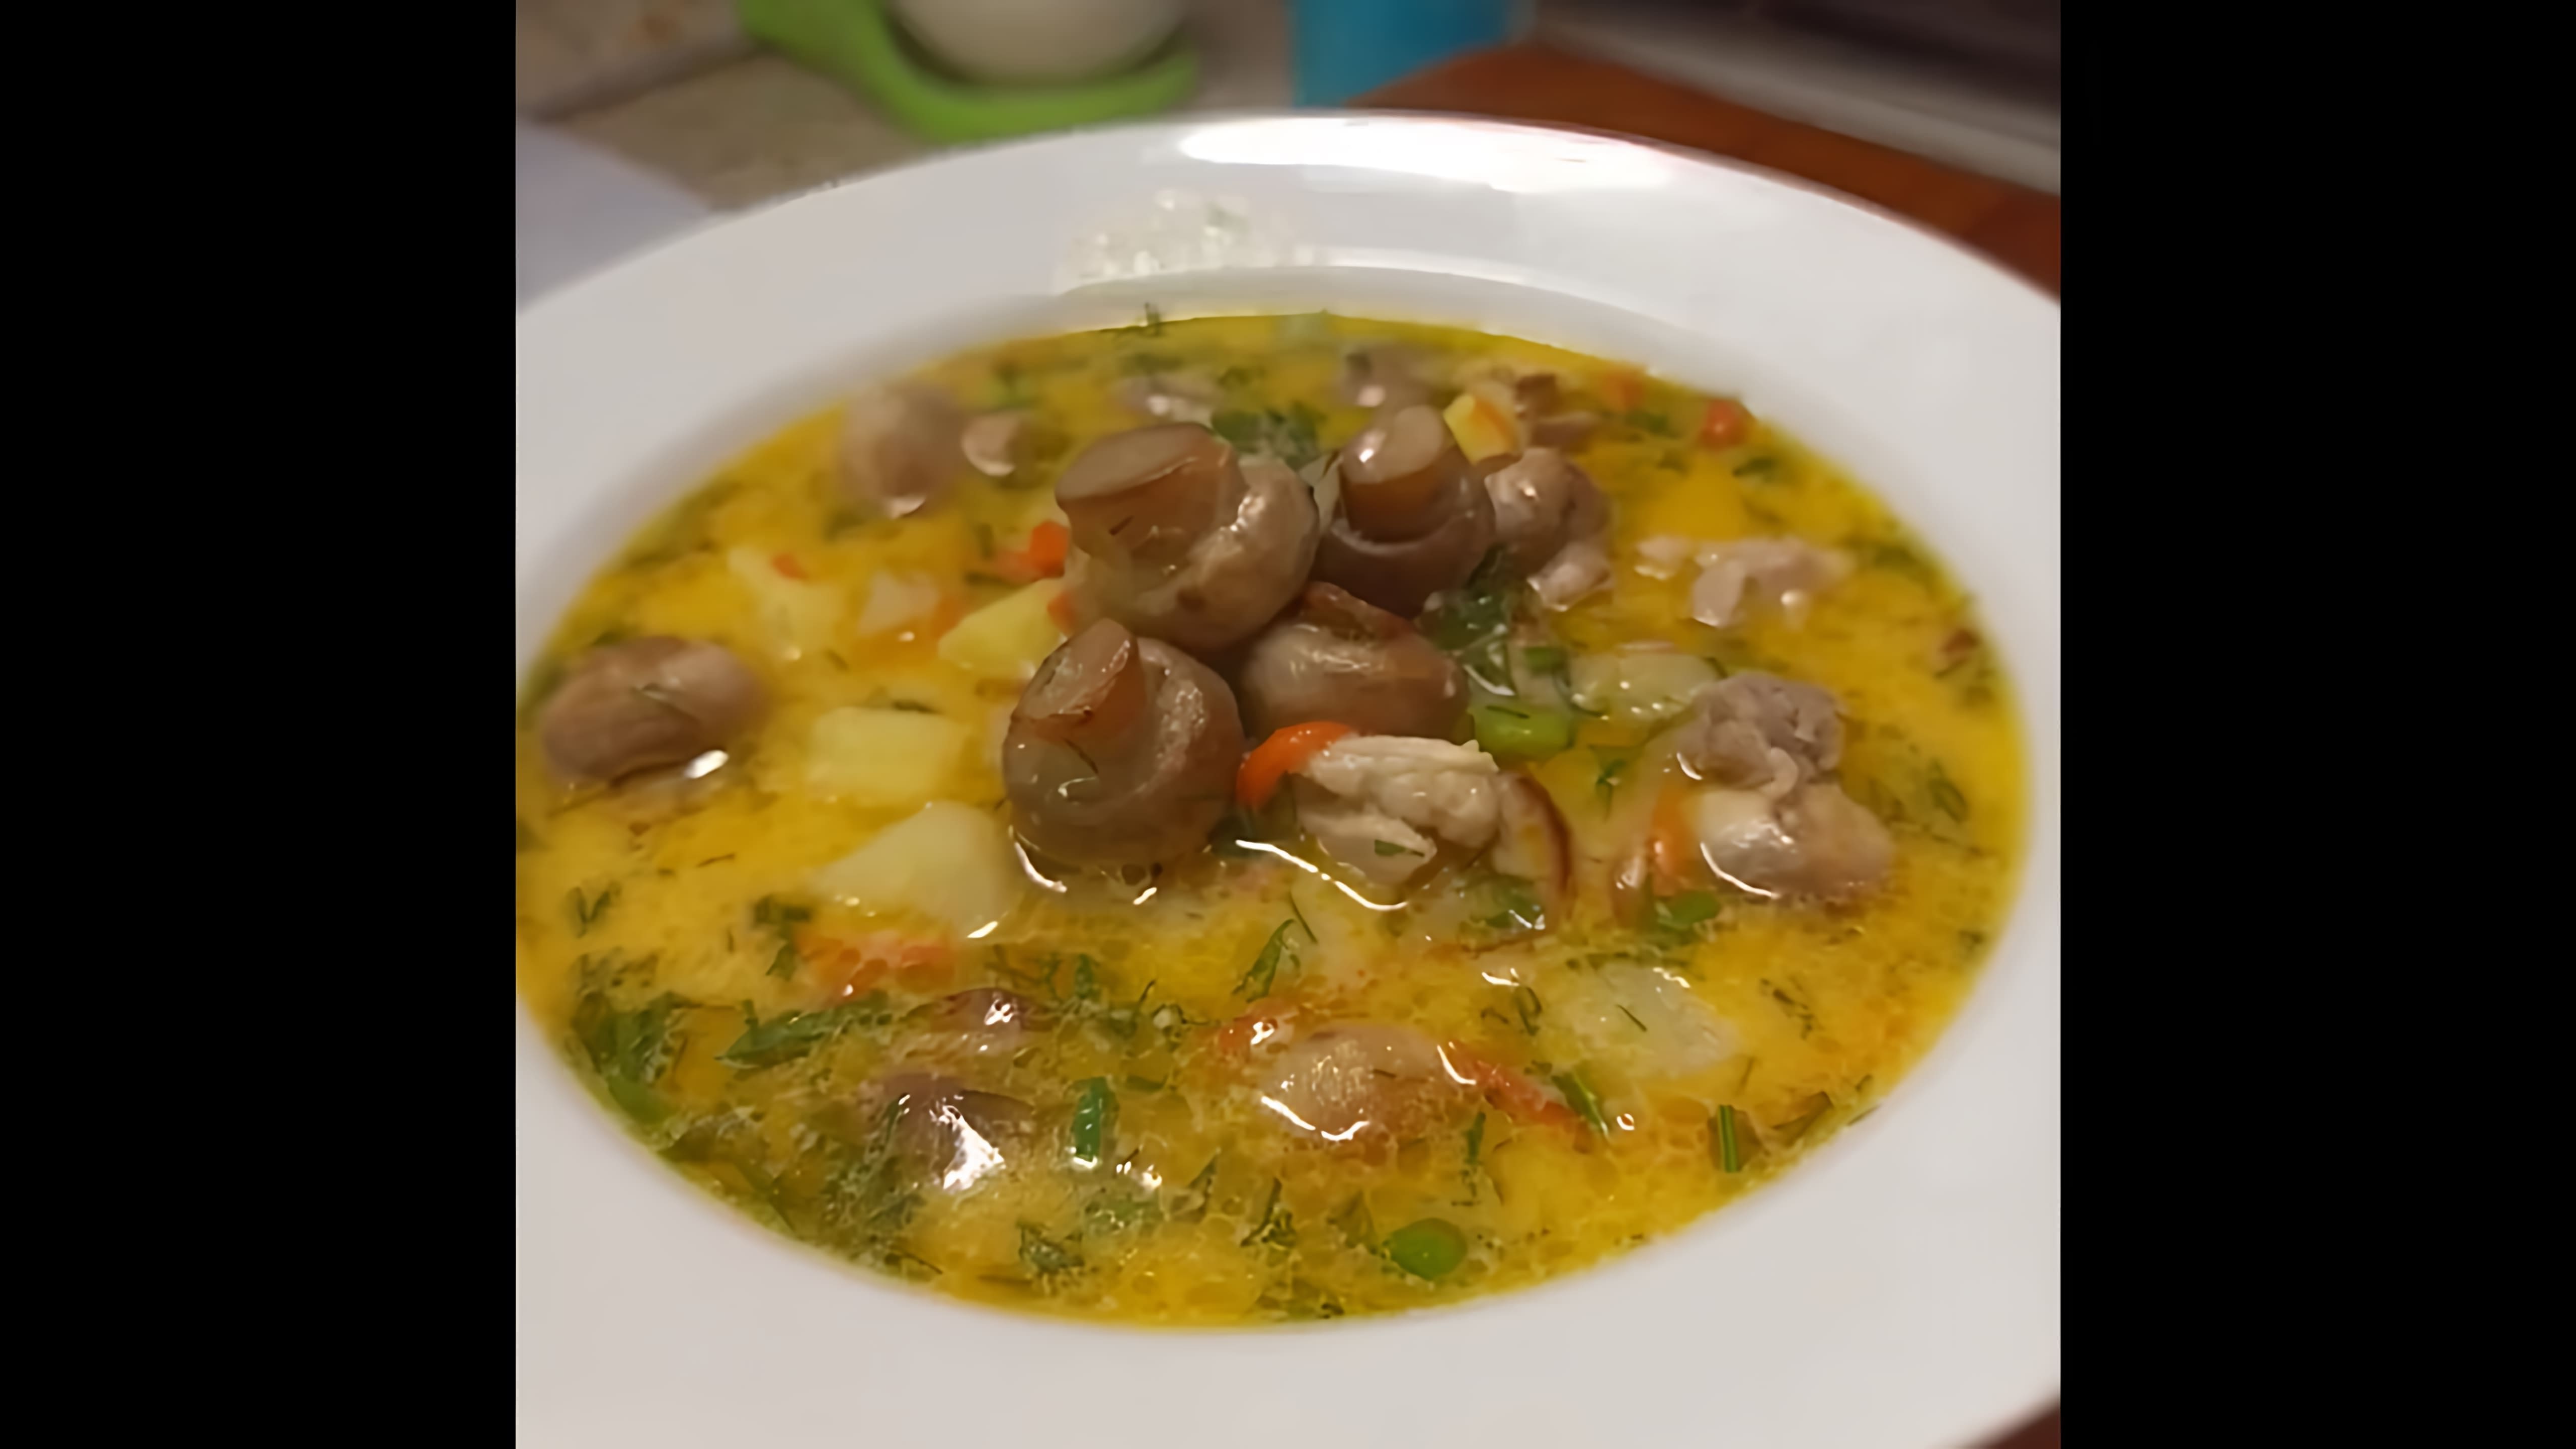 "Самый вкусный грибной суп" - это видео-ролик, который демонстрирует процесс приготовления ароматного и питательного грибного супа